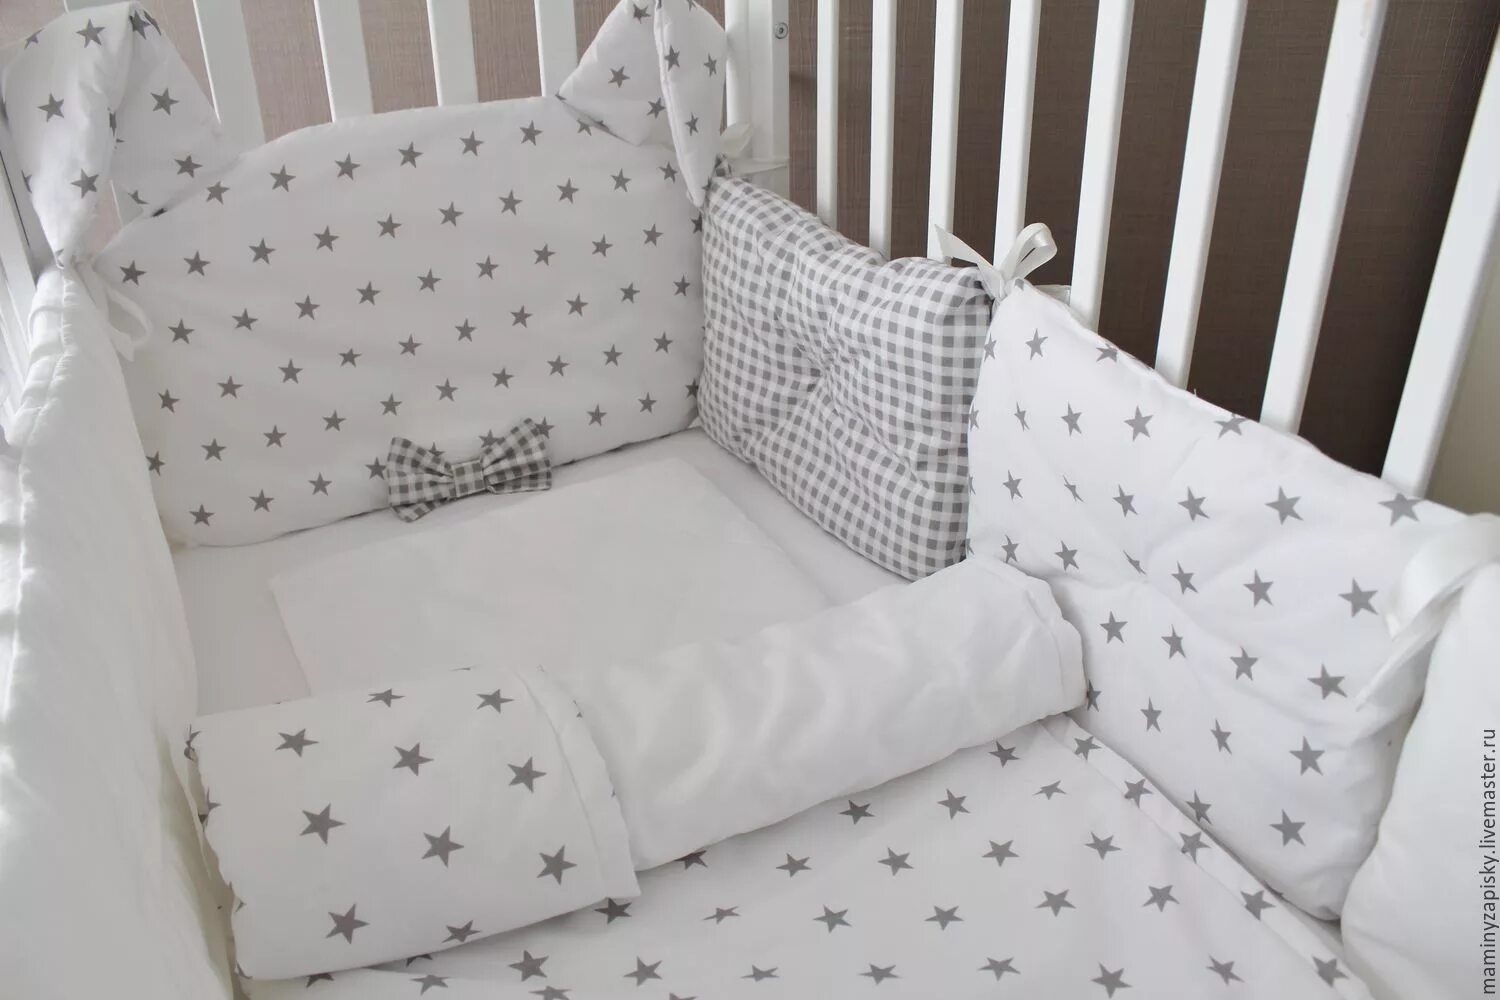 Комплект в кроватку для новорожденных с бортиками подушками. Комплект постельного белья для новорожденного в кроватку с бортиками. Комплект в кроватку для новорожденных с бортиками. Красивые бортики в кроватку.